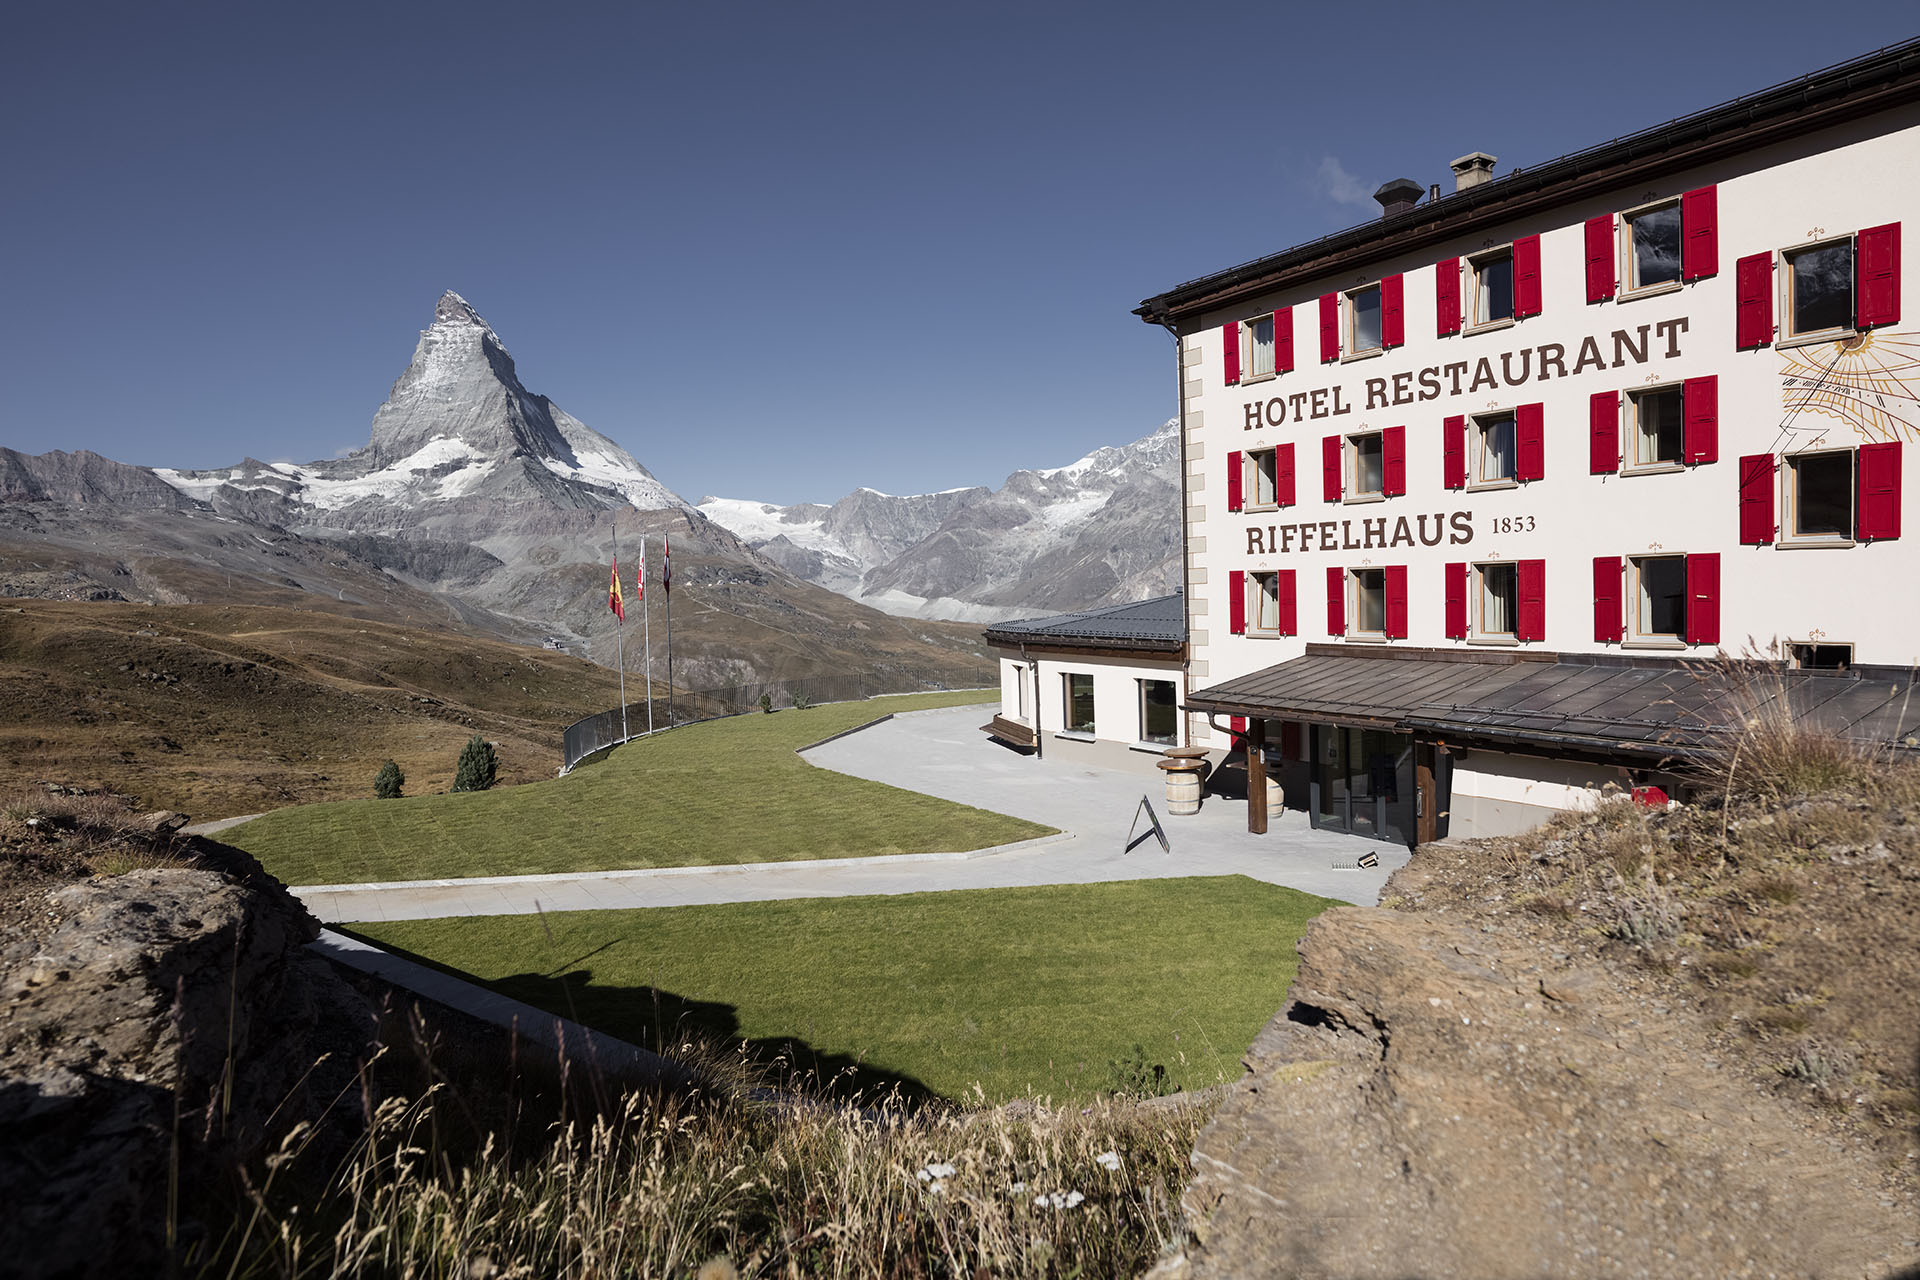 Hotel Restaurant Riffelhaus - The Matterhorn